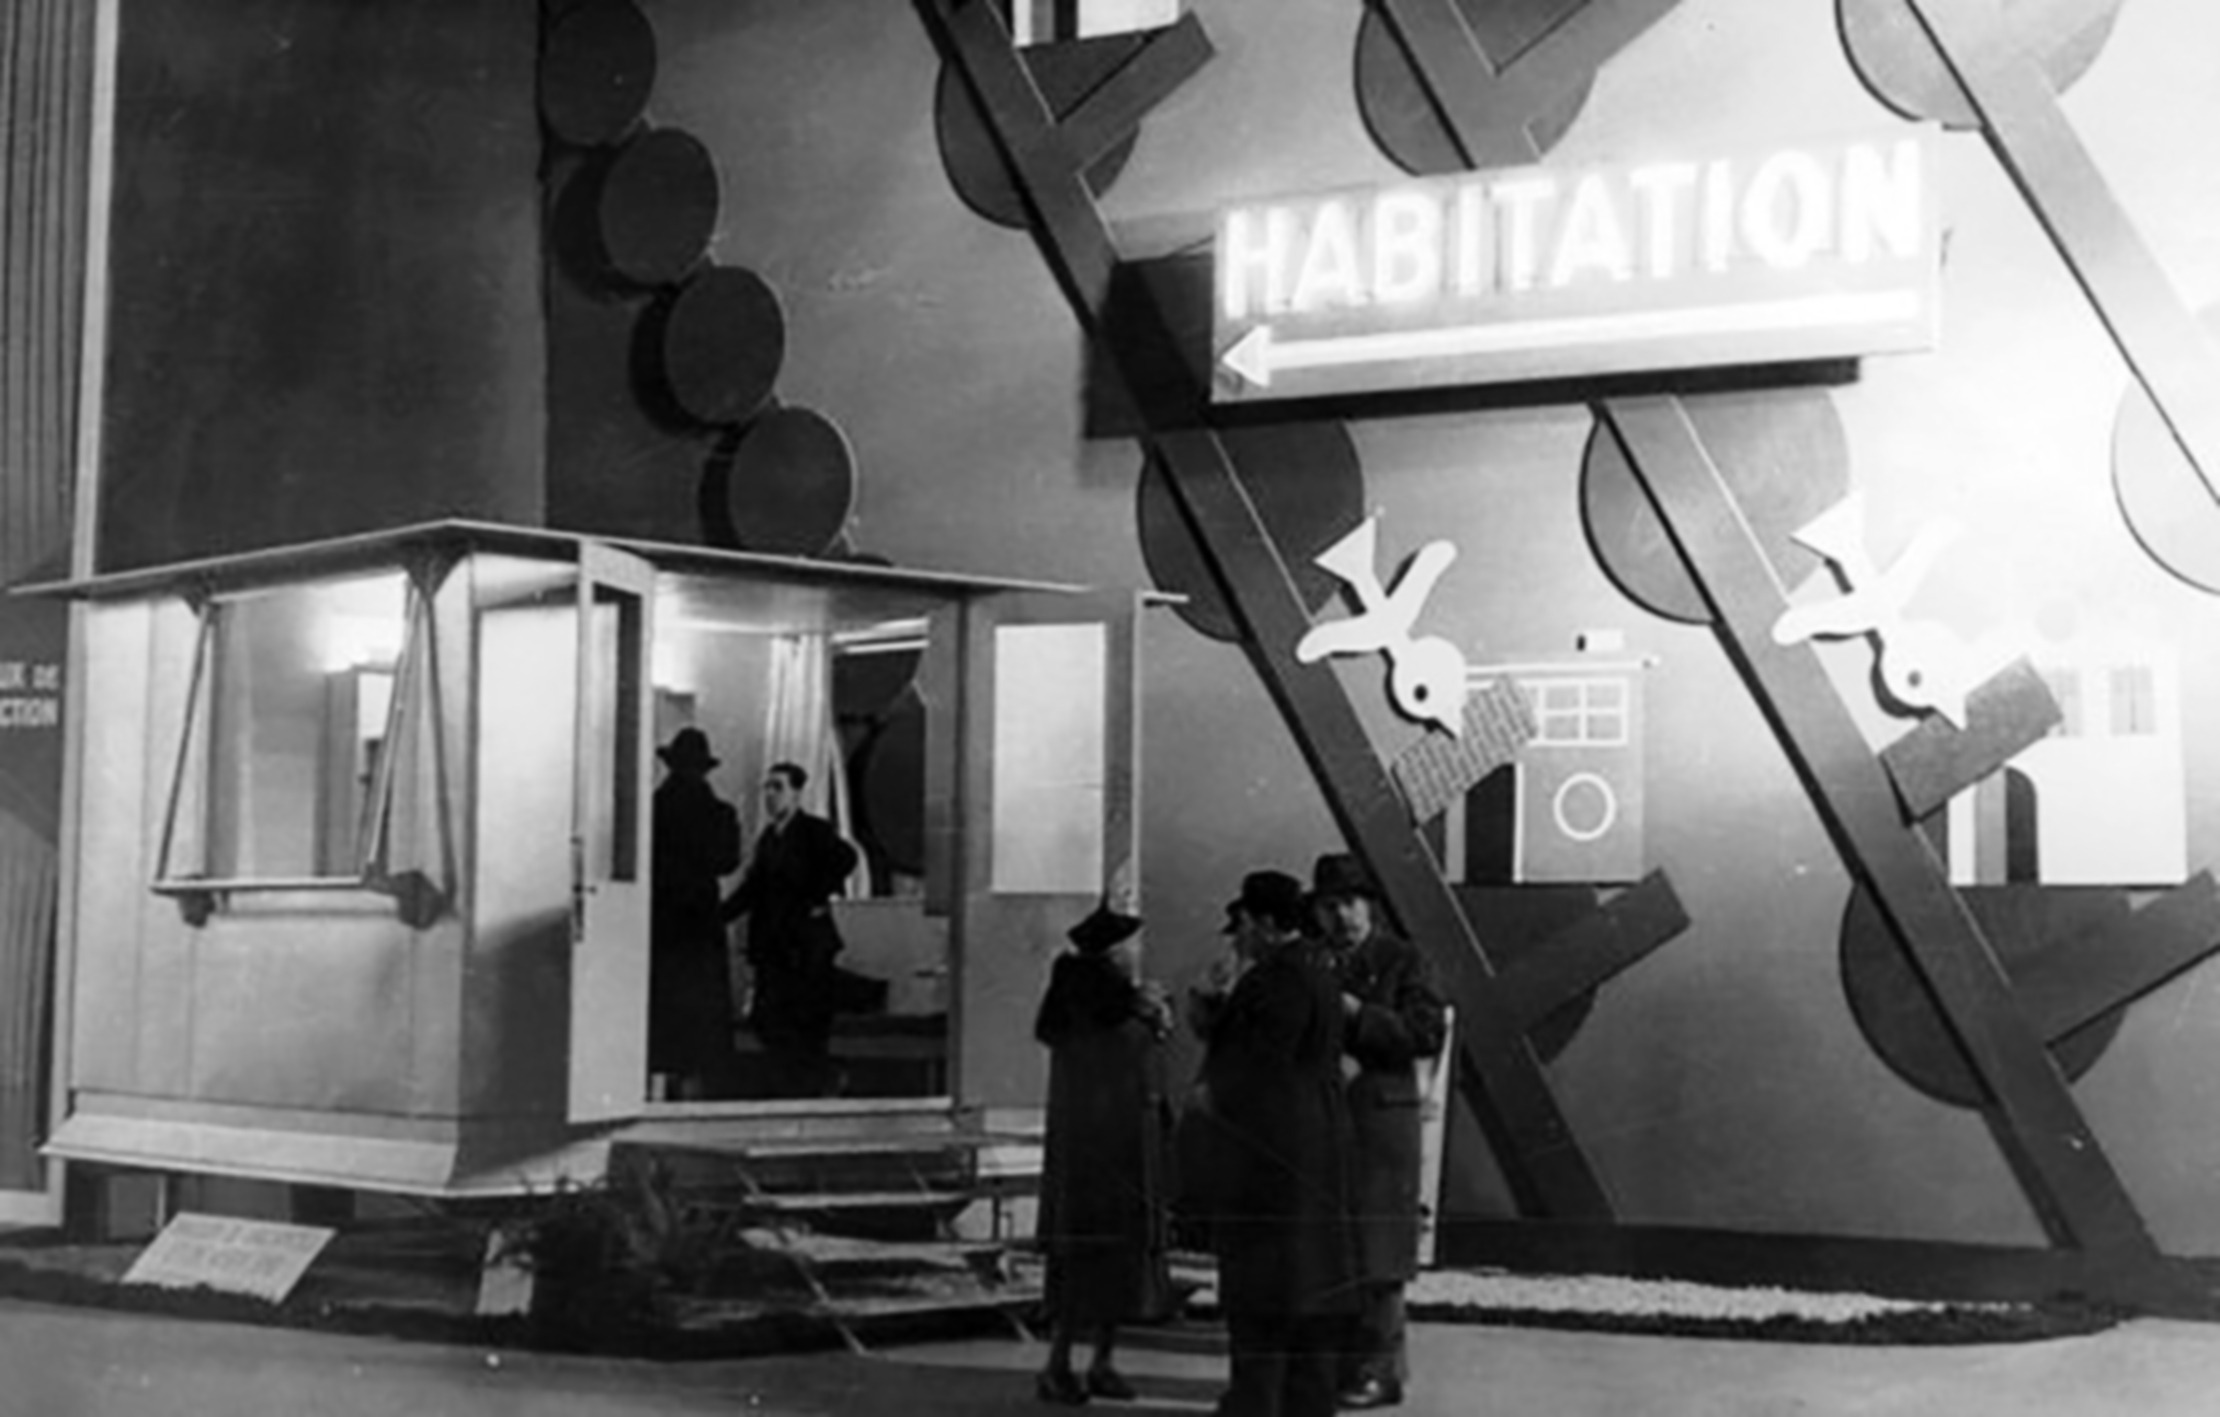 BLPS weekend house, (architects E. Beaudouin and M. Lods, designer Ateliers Jean Prouvé, constructor Les Forges de Strasbourg), prototype 1937. Exposition de l'Habitation, Grand Palais, Paris, 1938.